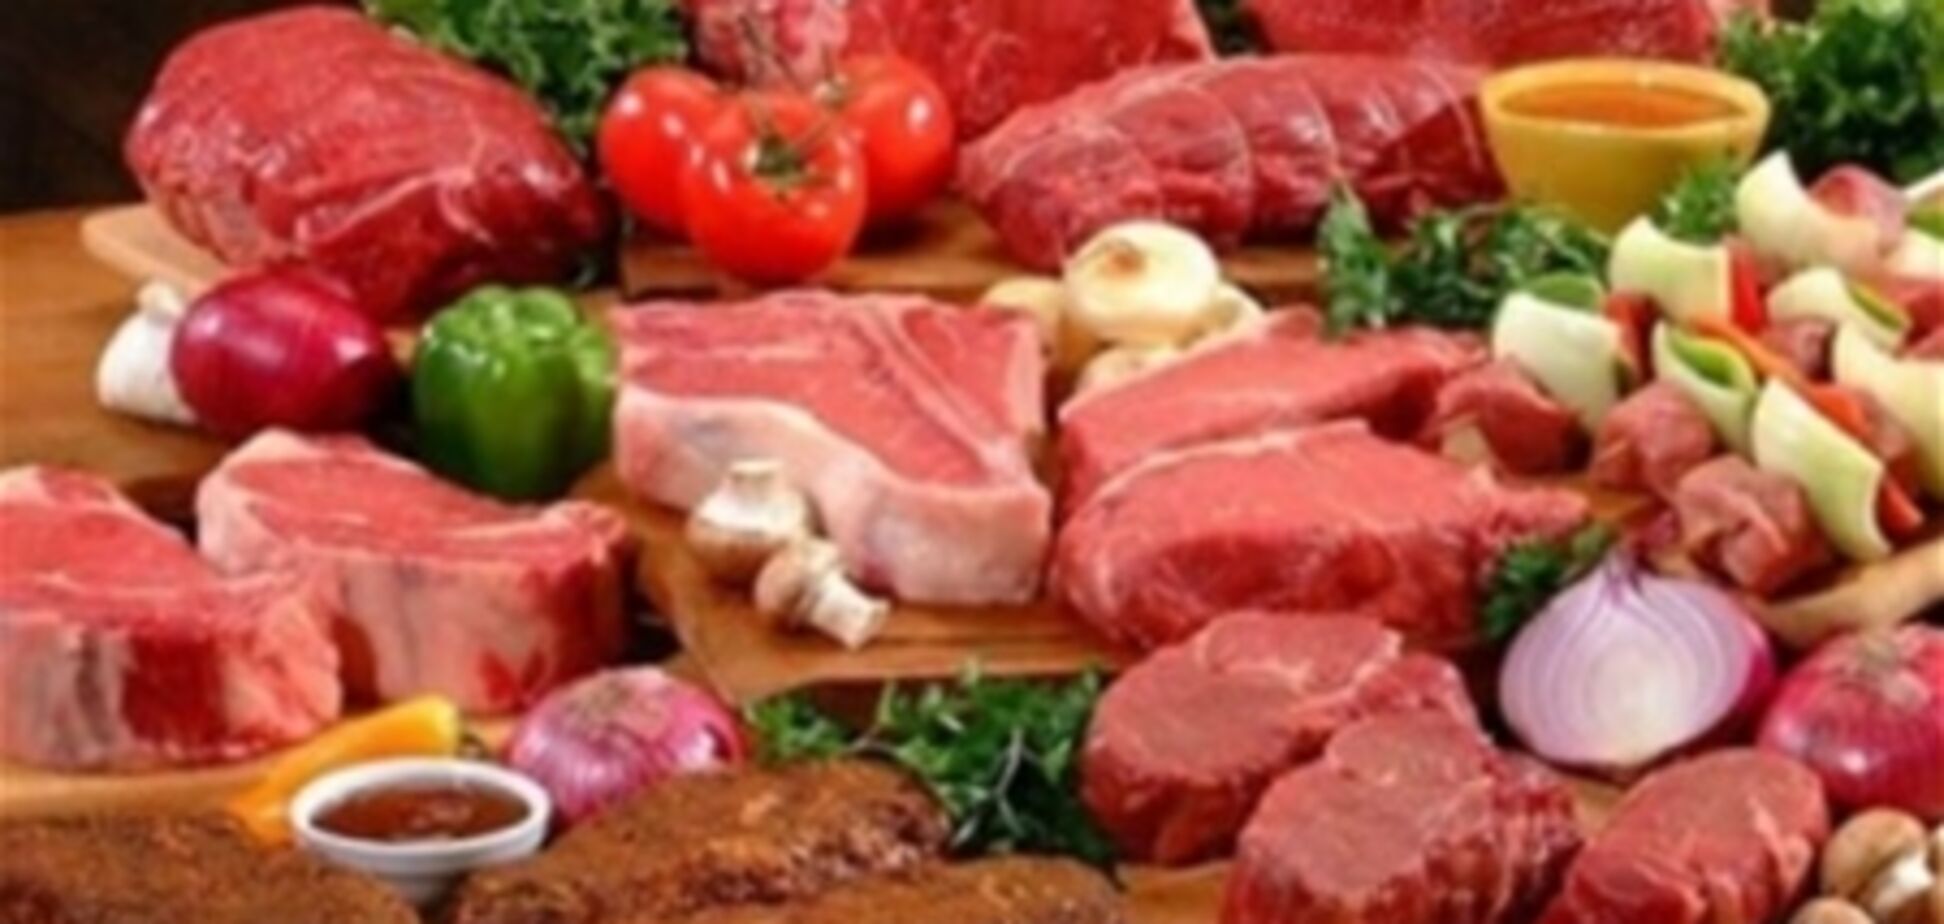 ЄС проведе масштабні перевірки м'ясних продуктів